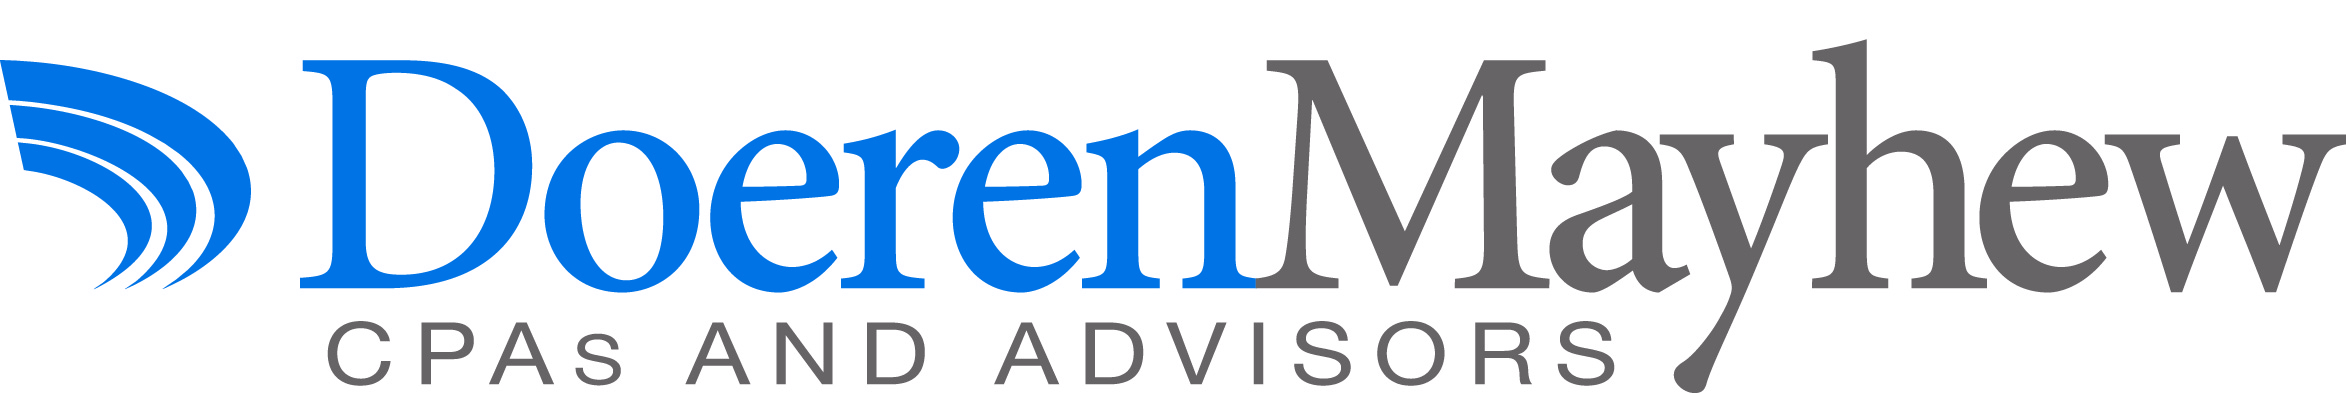 Doeren-Mayhew-New-Logo.jpg